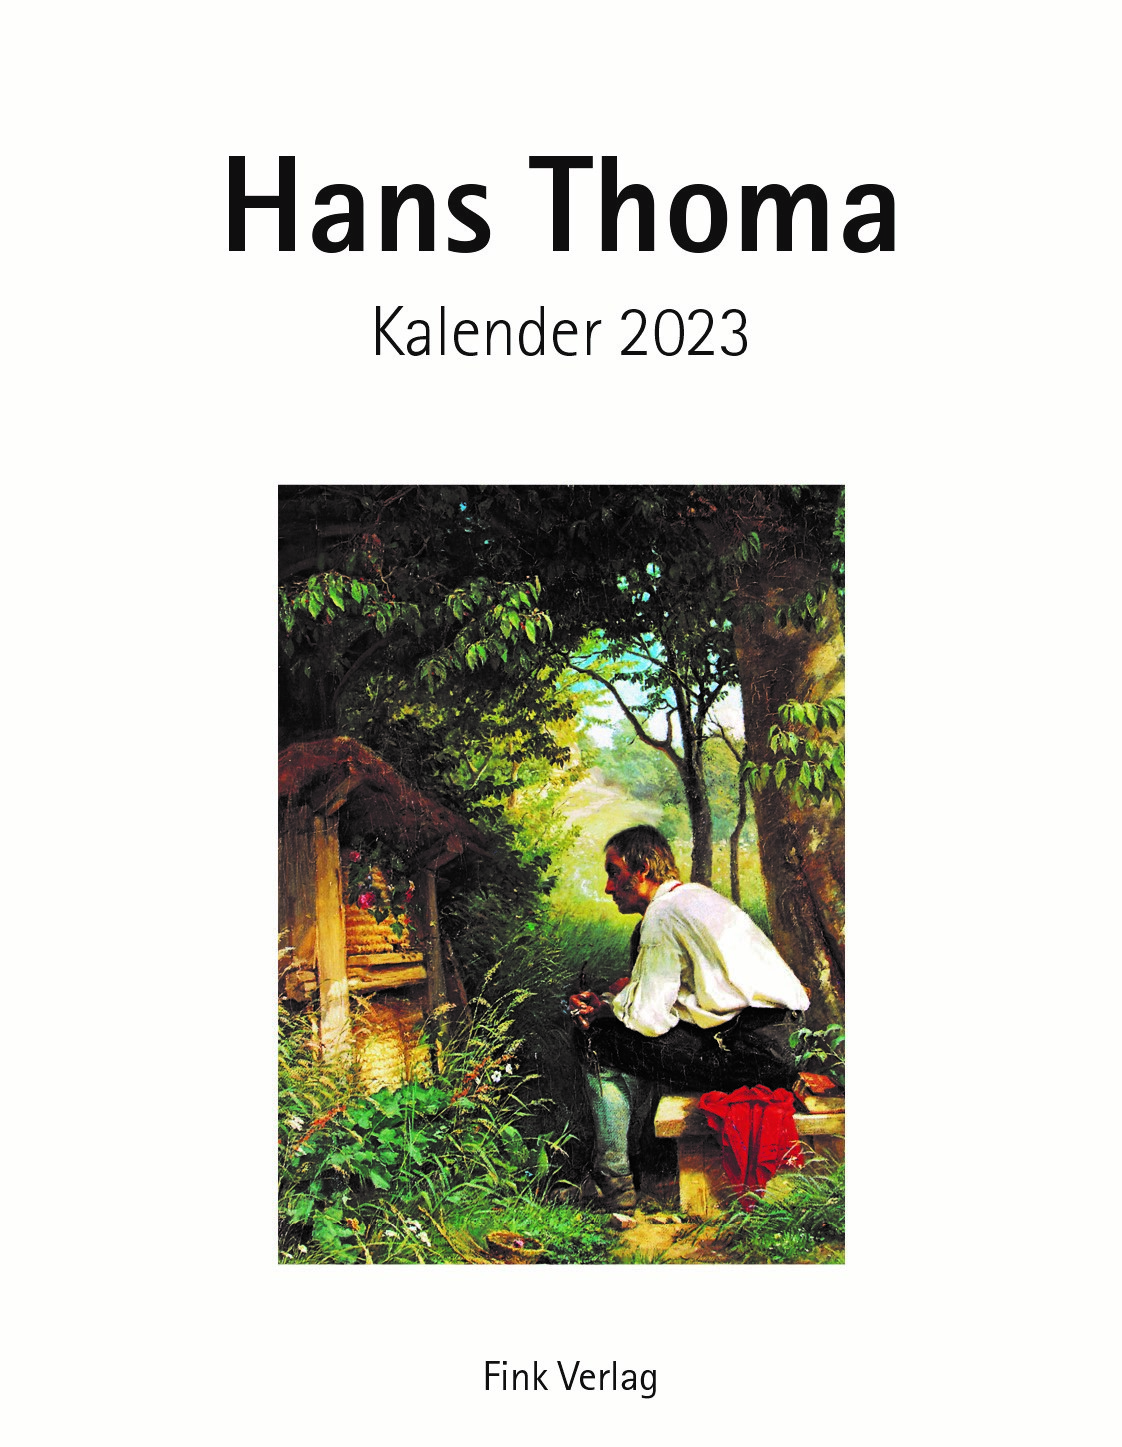 Hans Thoma 2023